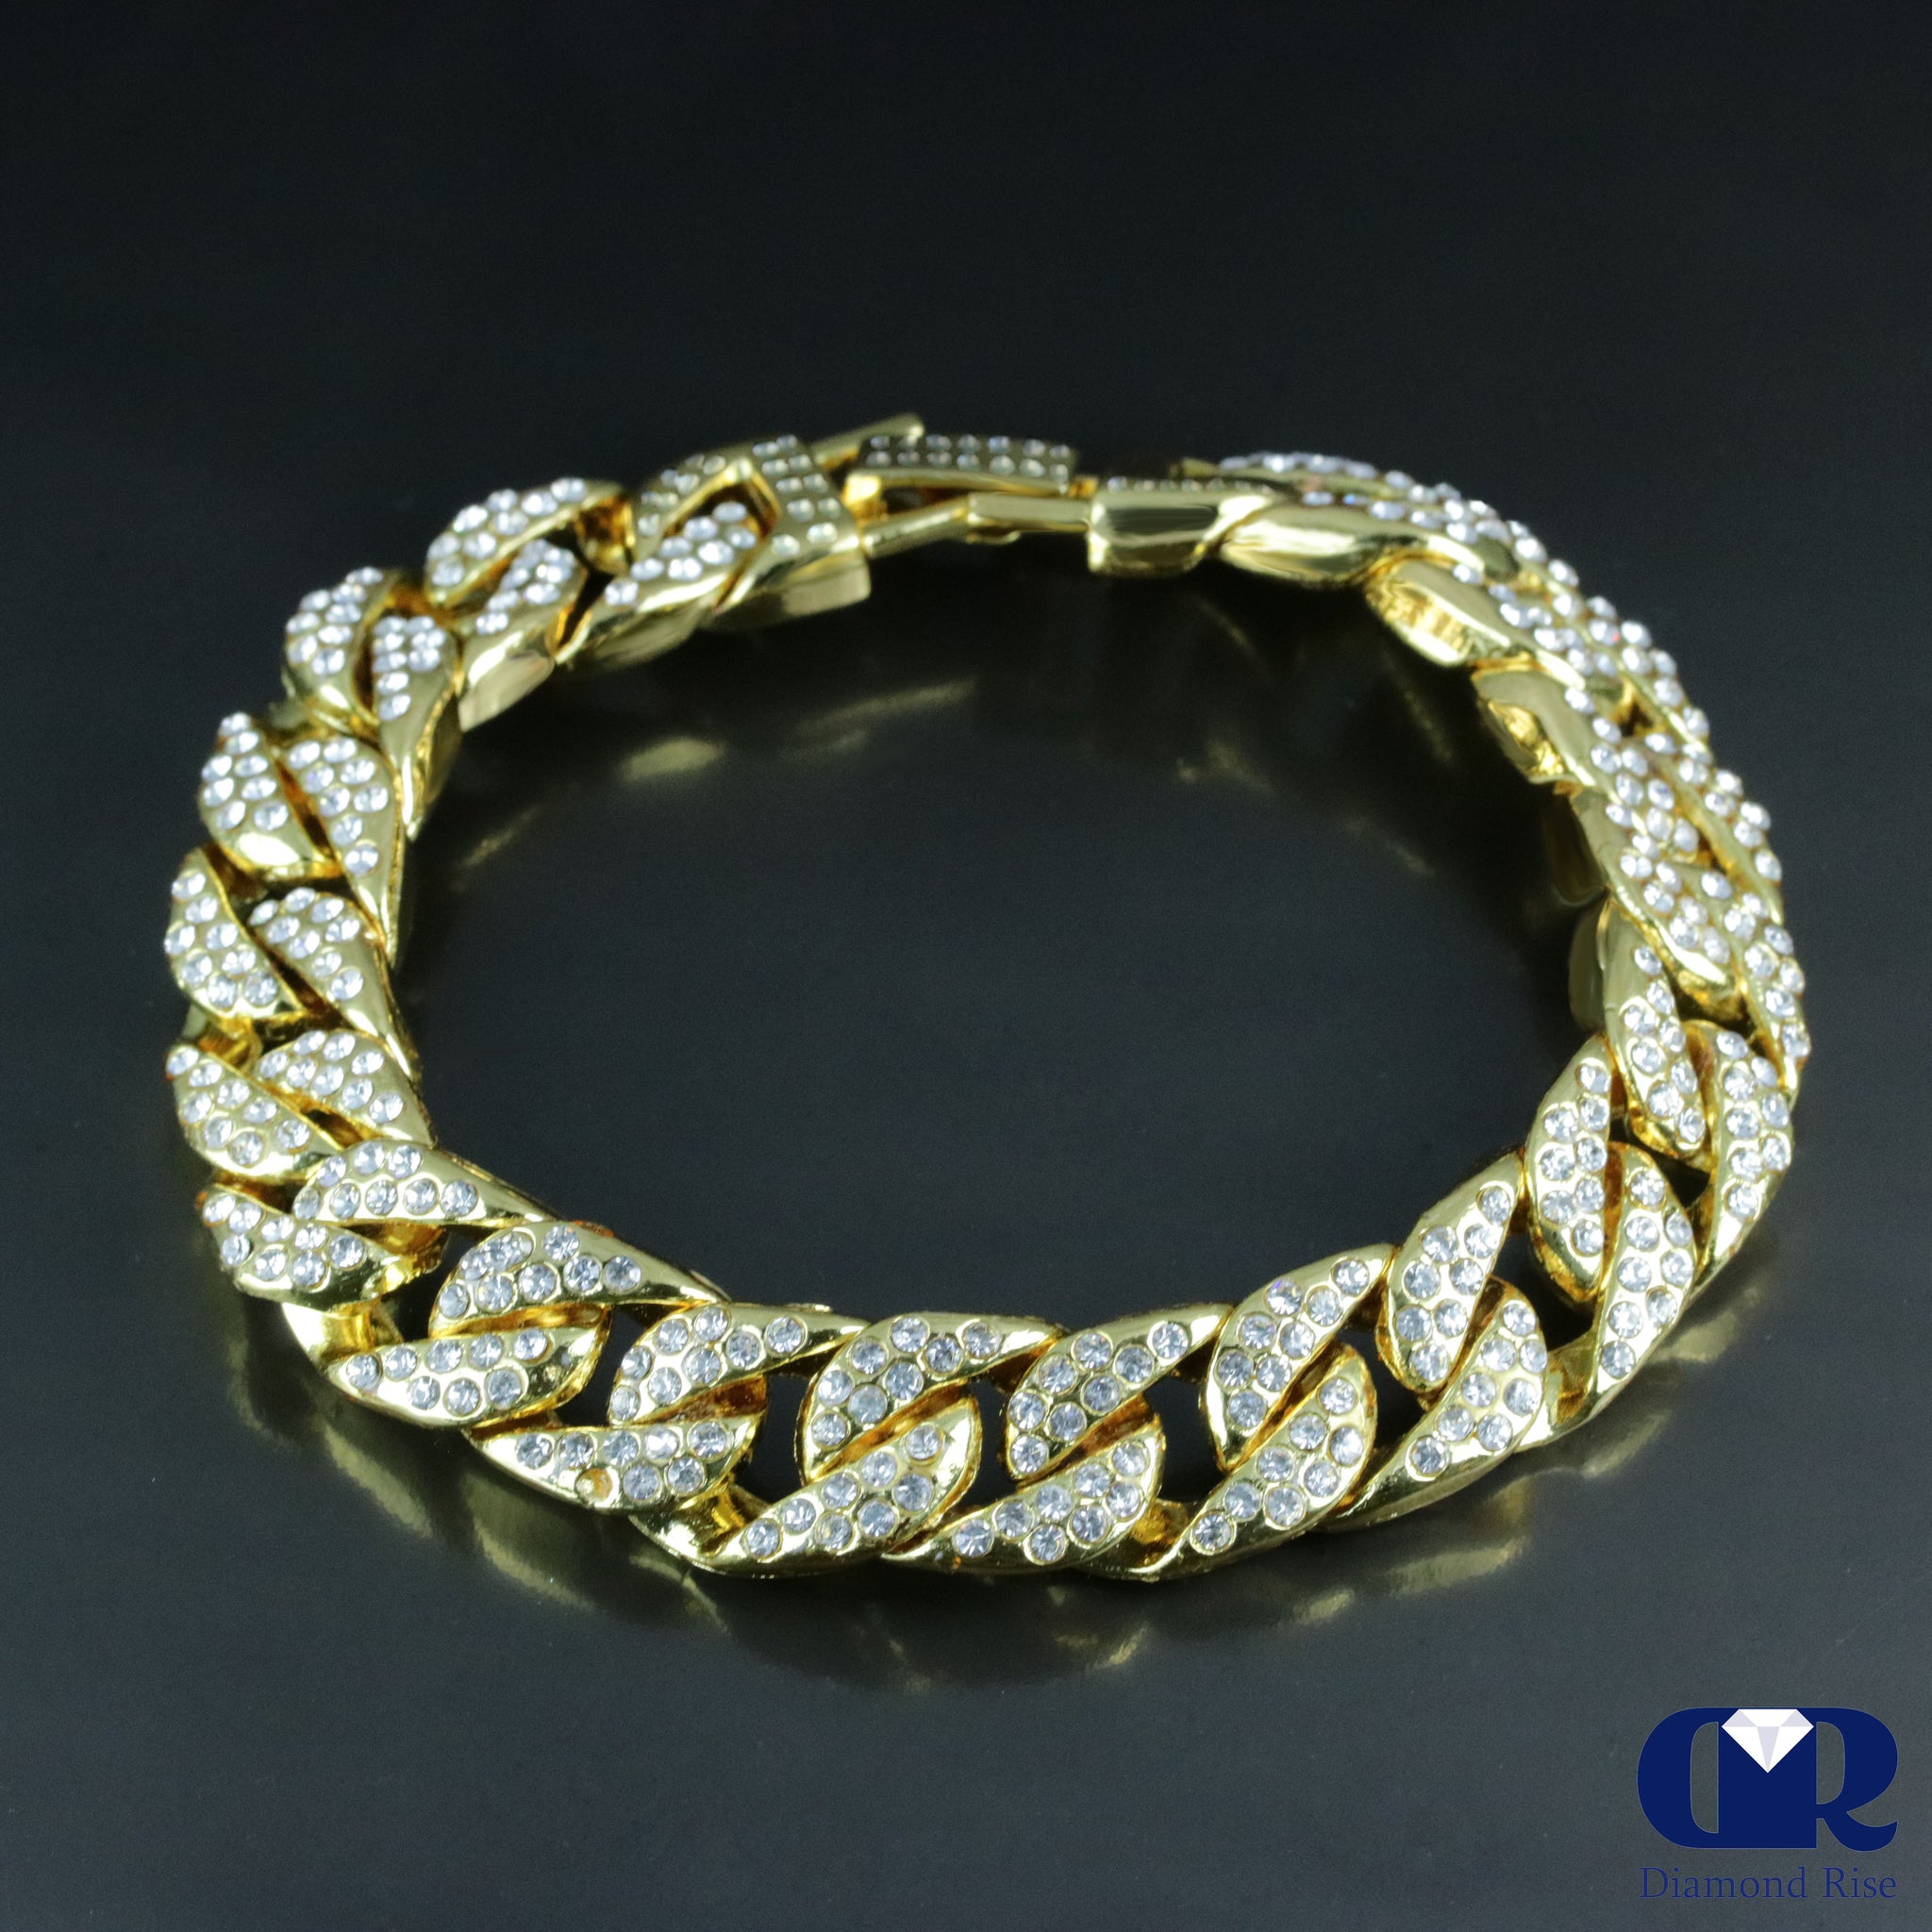 Fancy Cuban Men's Bracelet Solid gold with diamond lock.